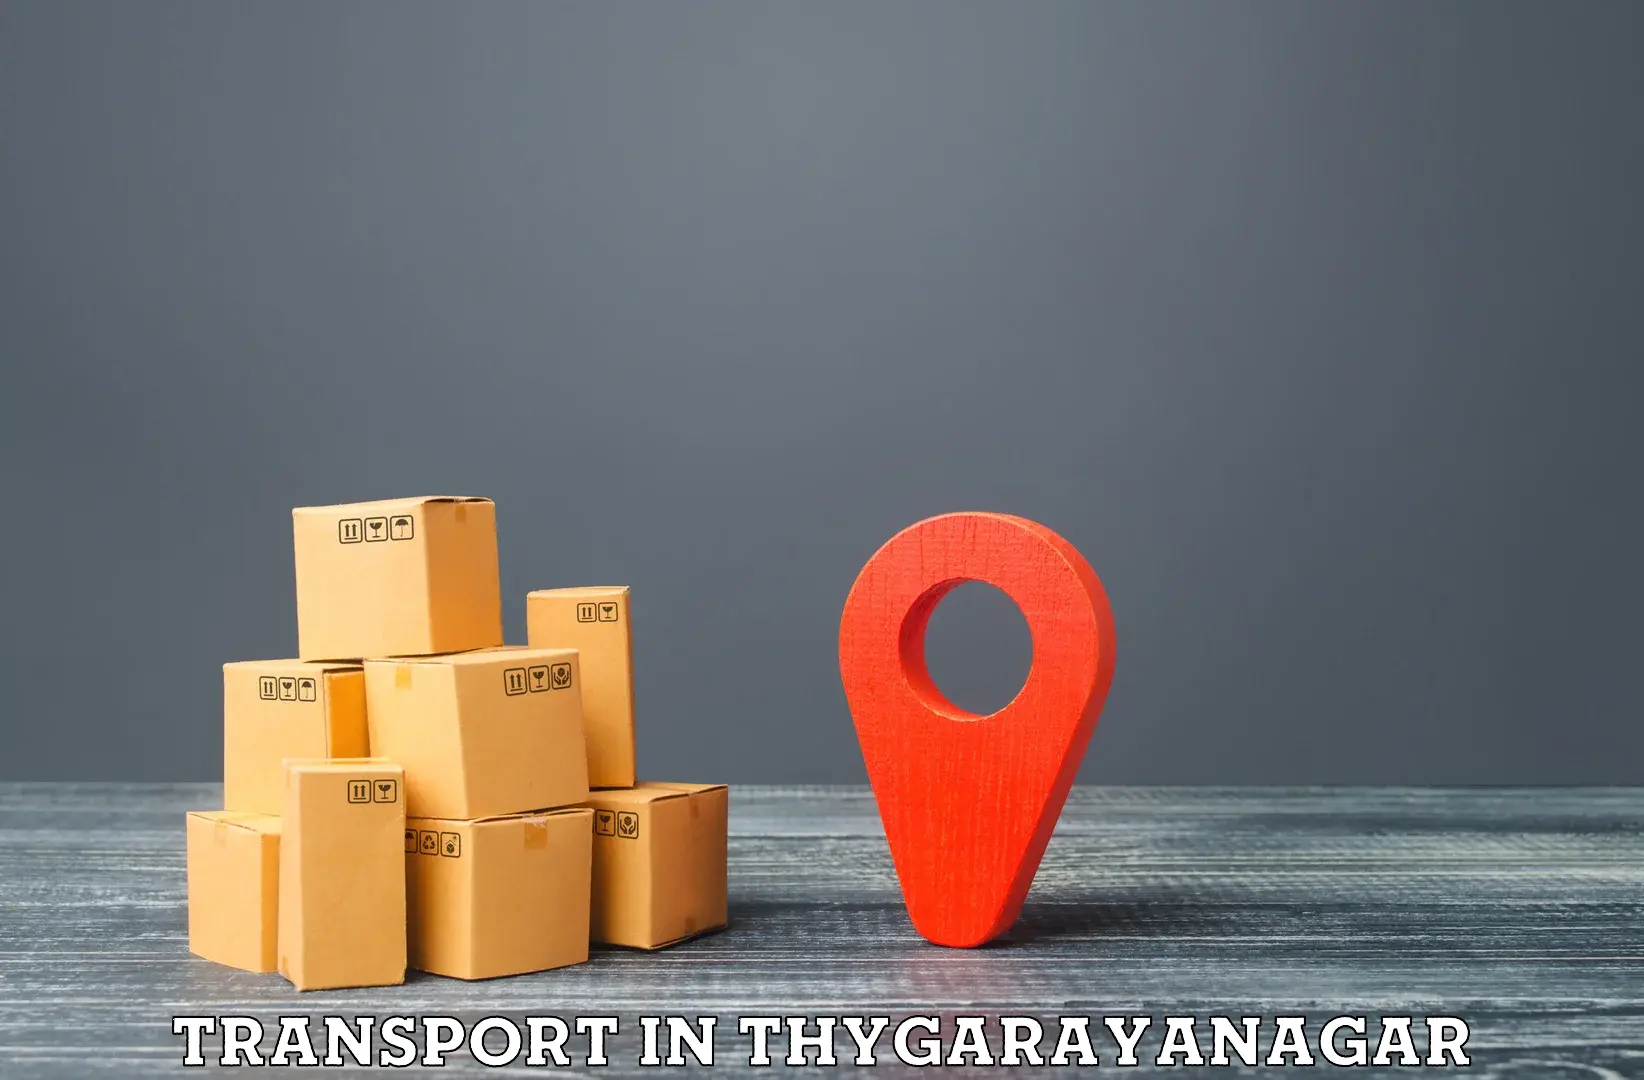 Nationwide transport services in Thygarayanagar